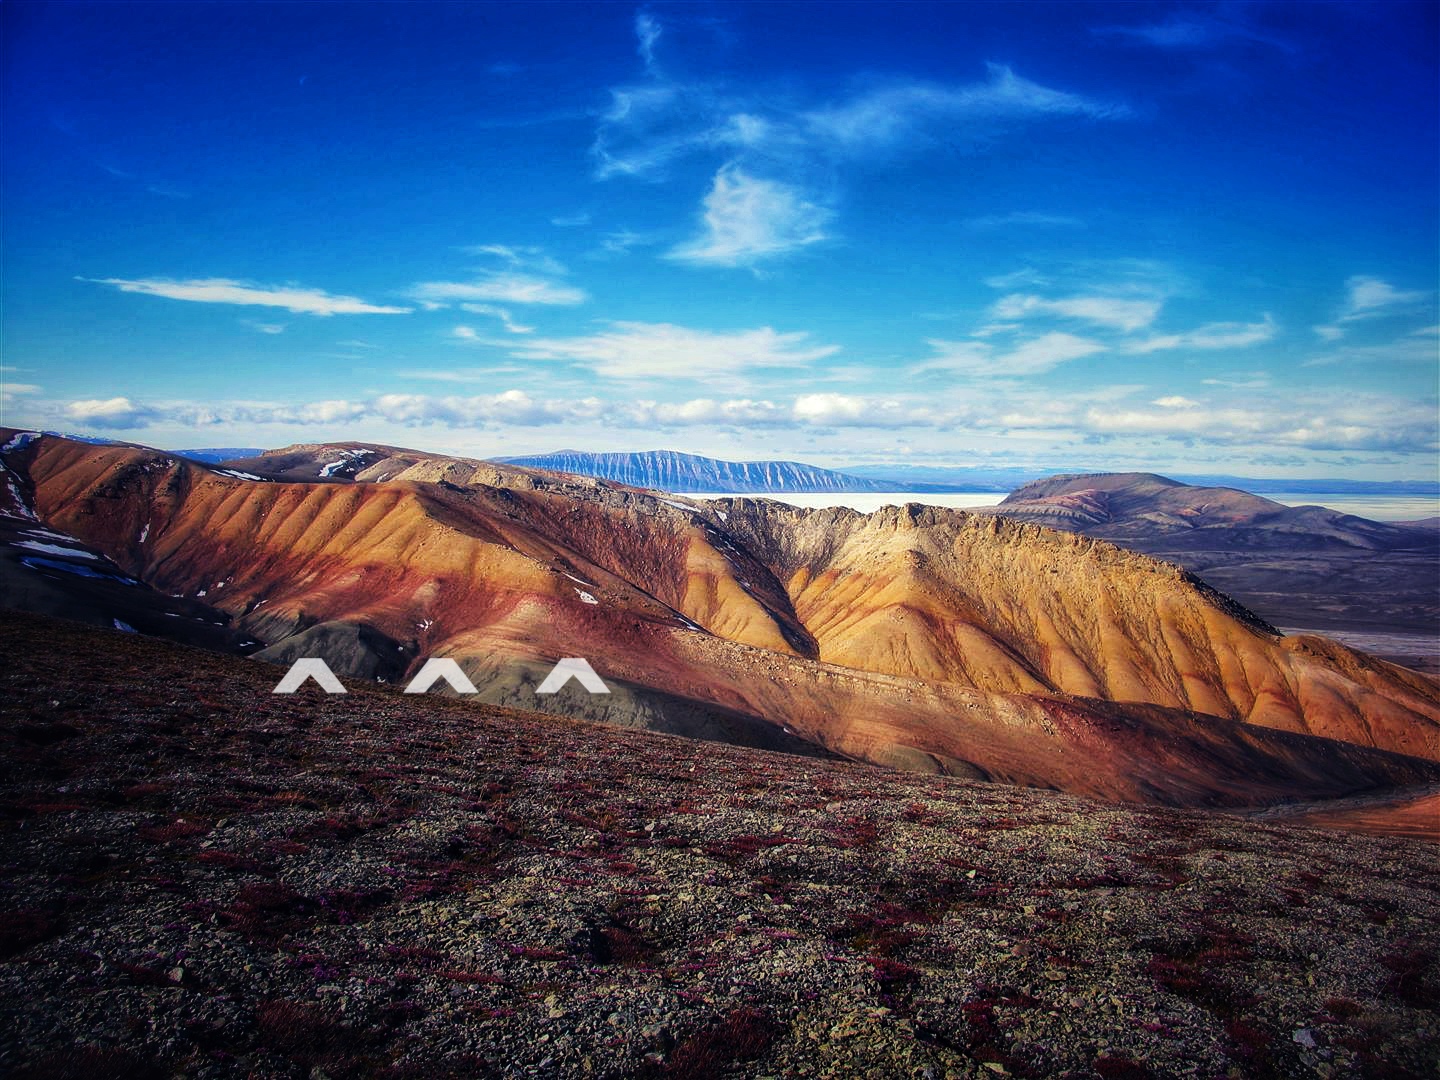 La variation des couleurs – du vert au rouge – des formations rocheuses dans le nord de l’île d’Ellesmere indique la période où 90 % des espèces vivantes sont disparues durant l’extinction du Permien. On a décelé, à cet endroit, une forte concentration de mercure.